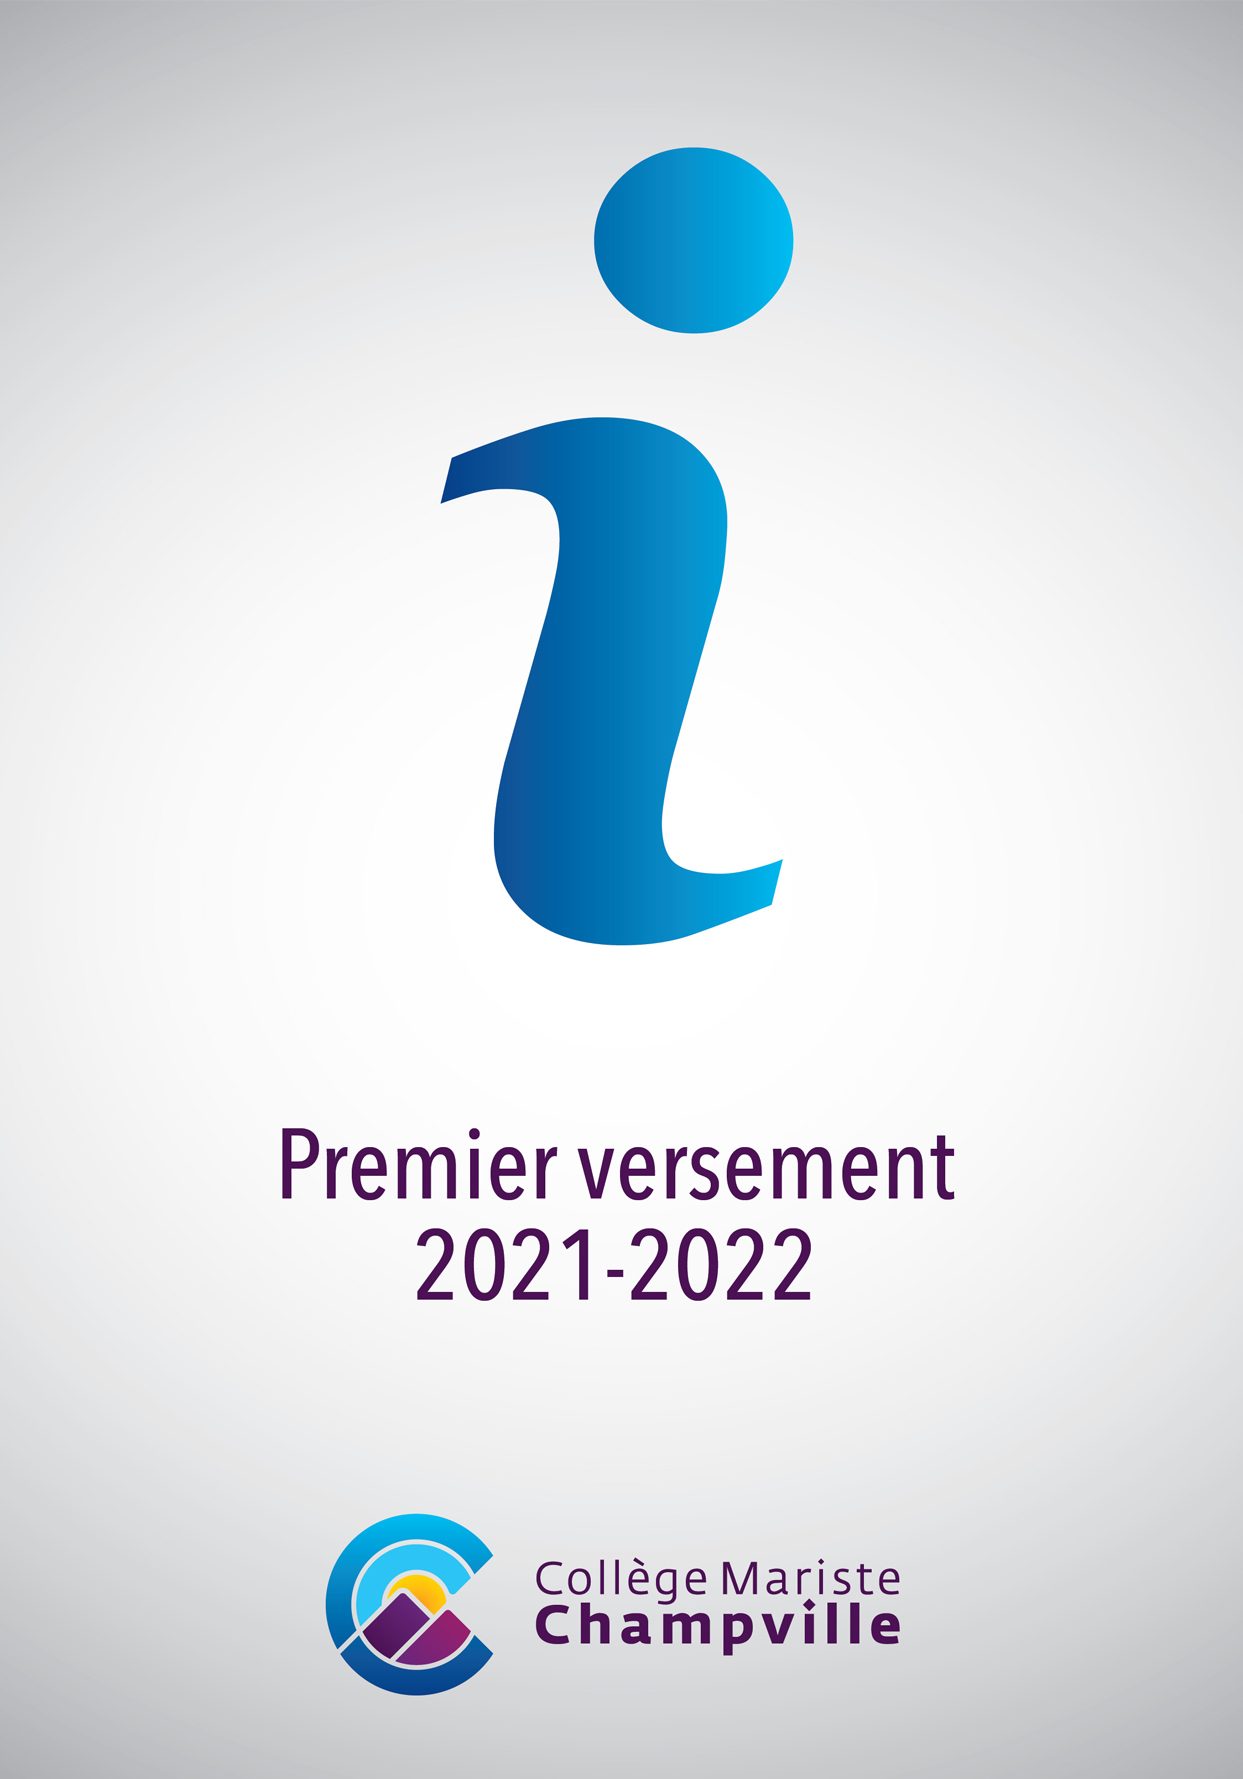 Premier versement 2021-2022